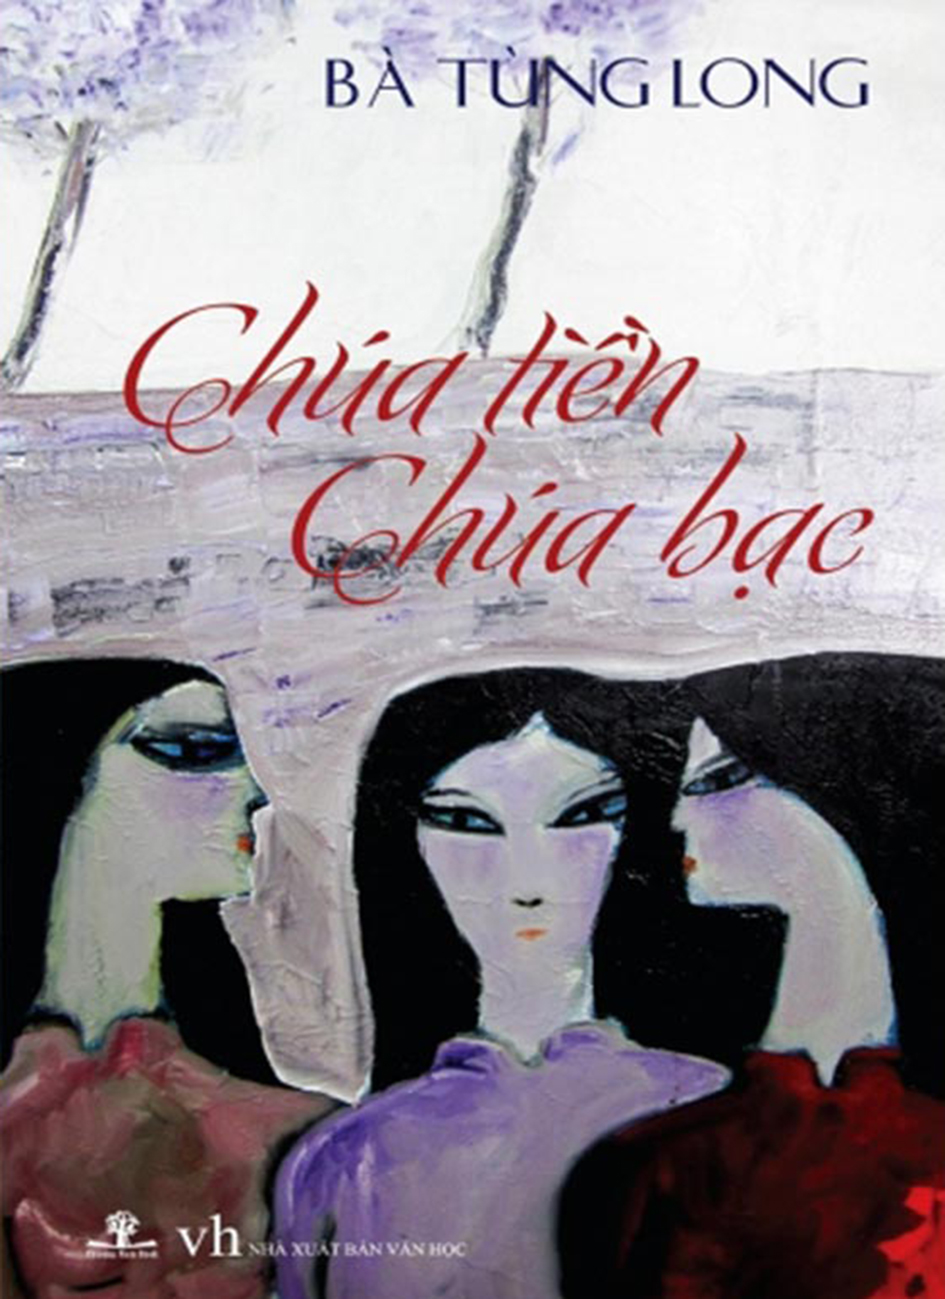 Chua Tien Chua Bac